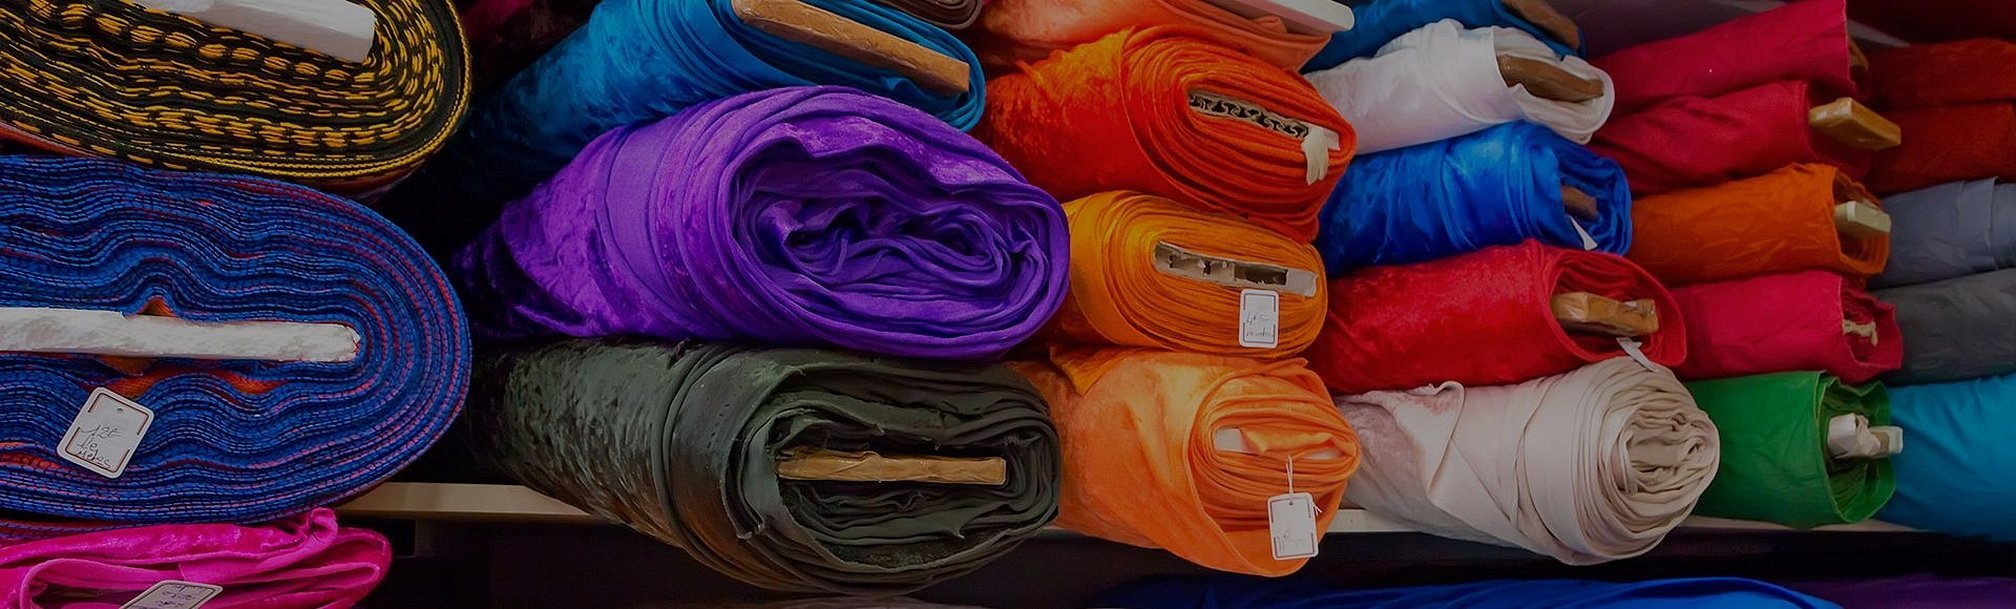 Ткань текстиль